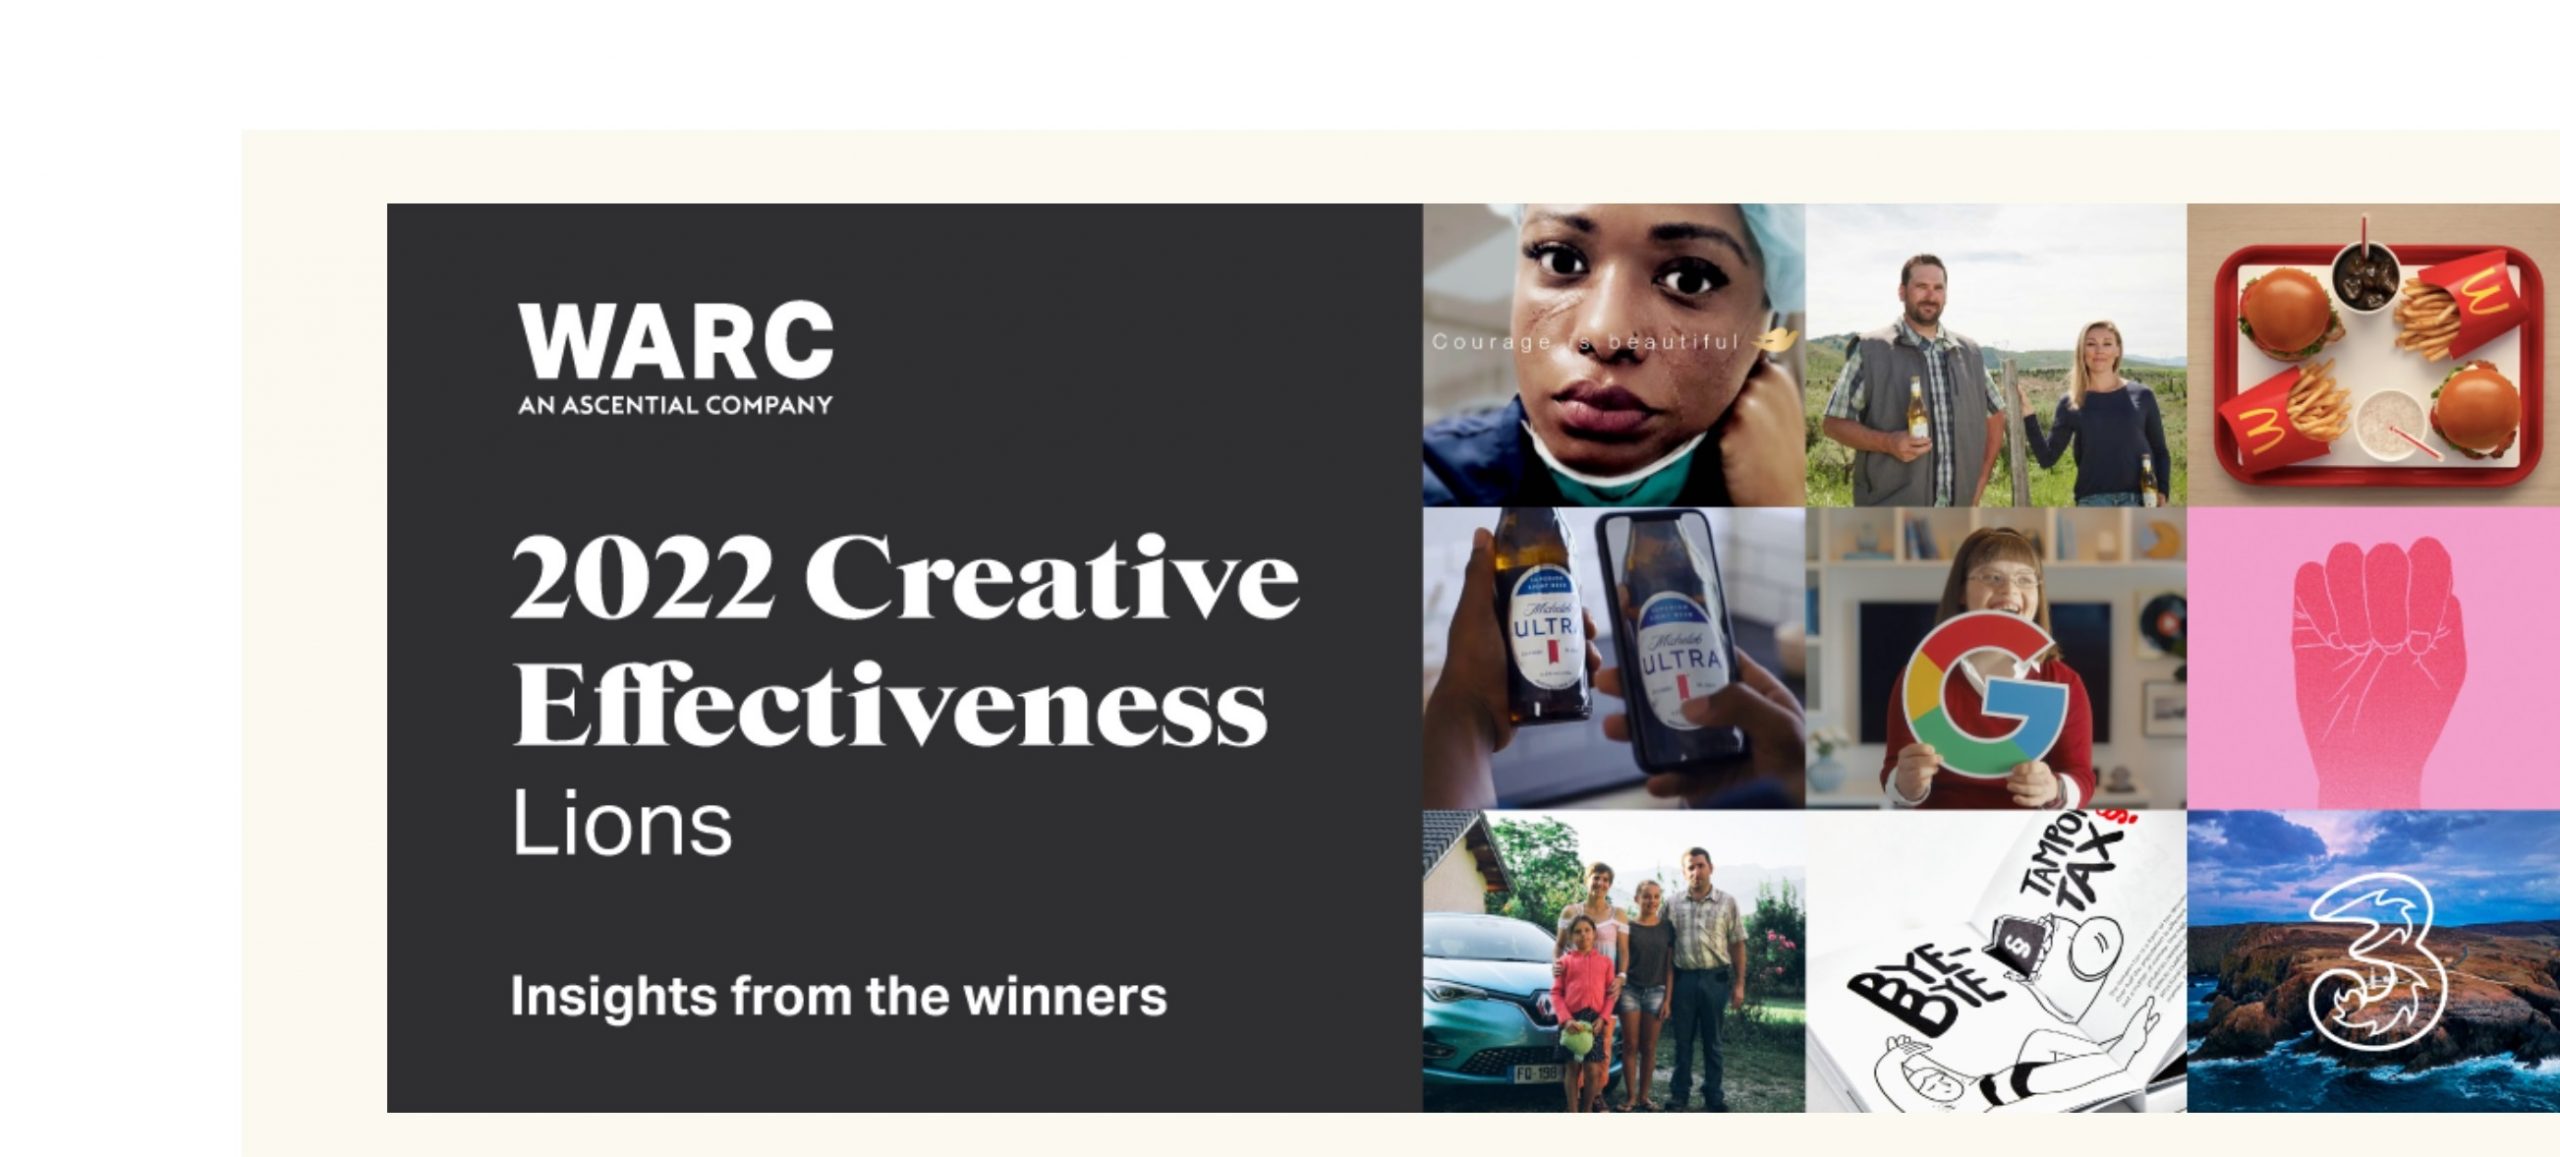 WARC revela las claves de los ganadores de la Eficacia creativa de